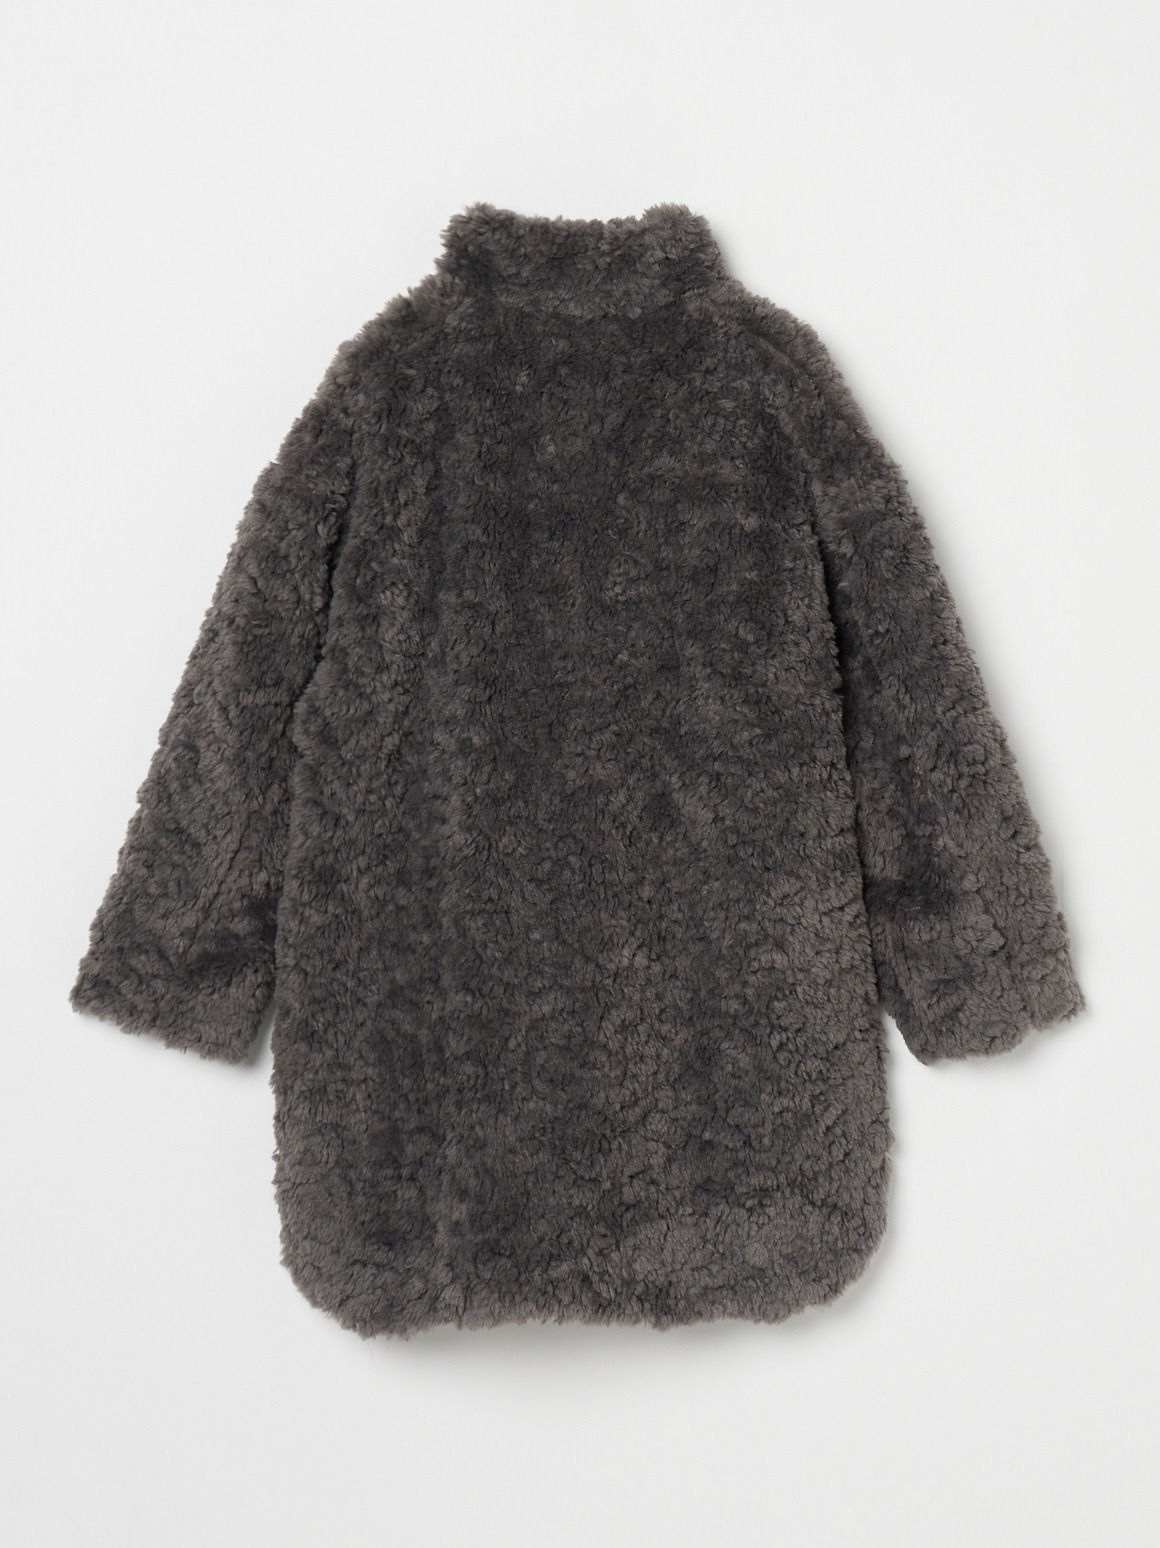 YILON イロン eco fur coat エコファー コート ウエストマーク40cm